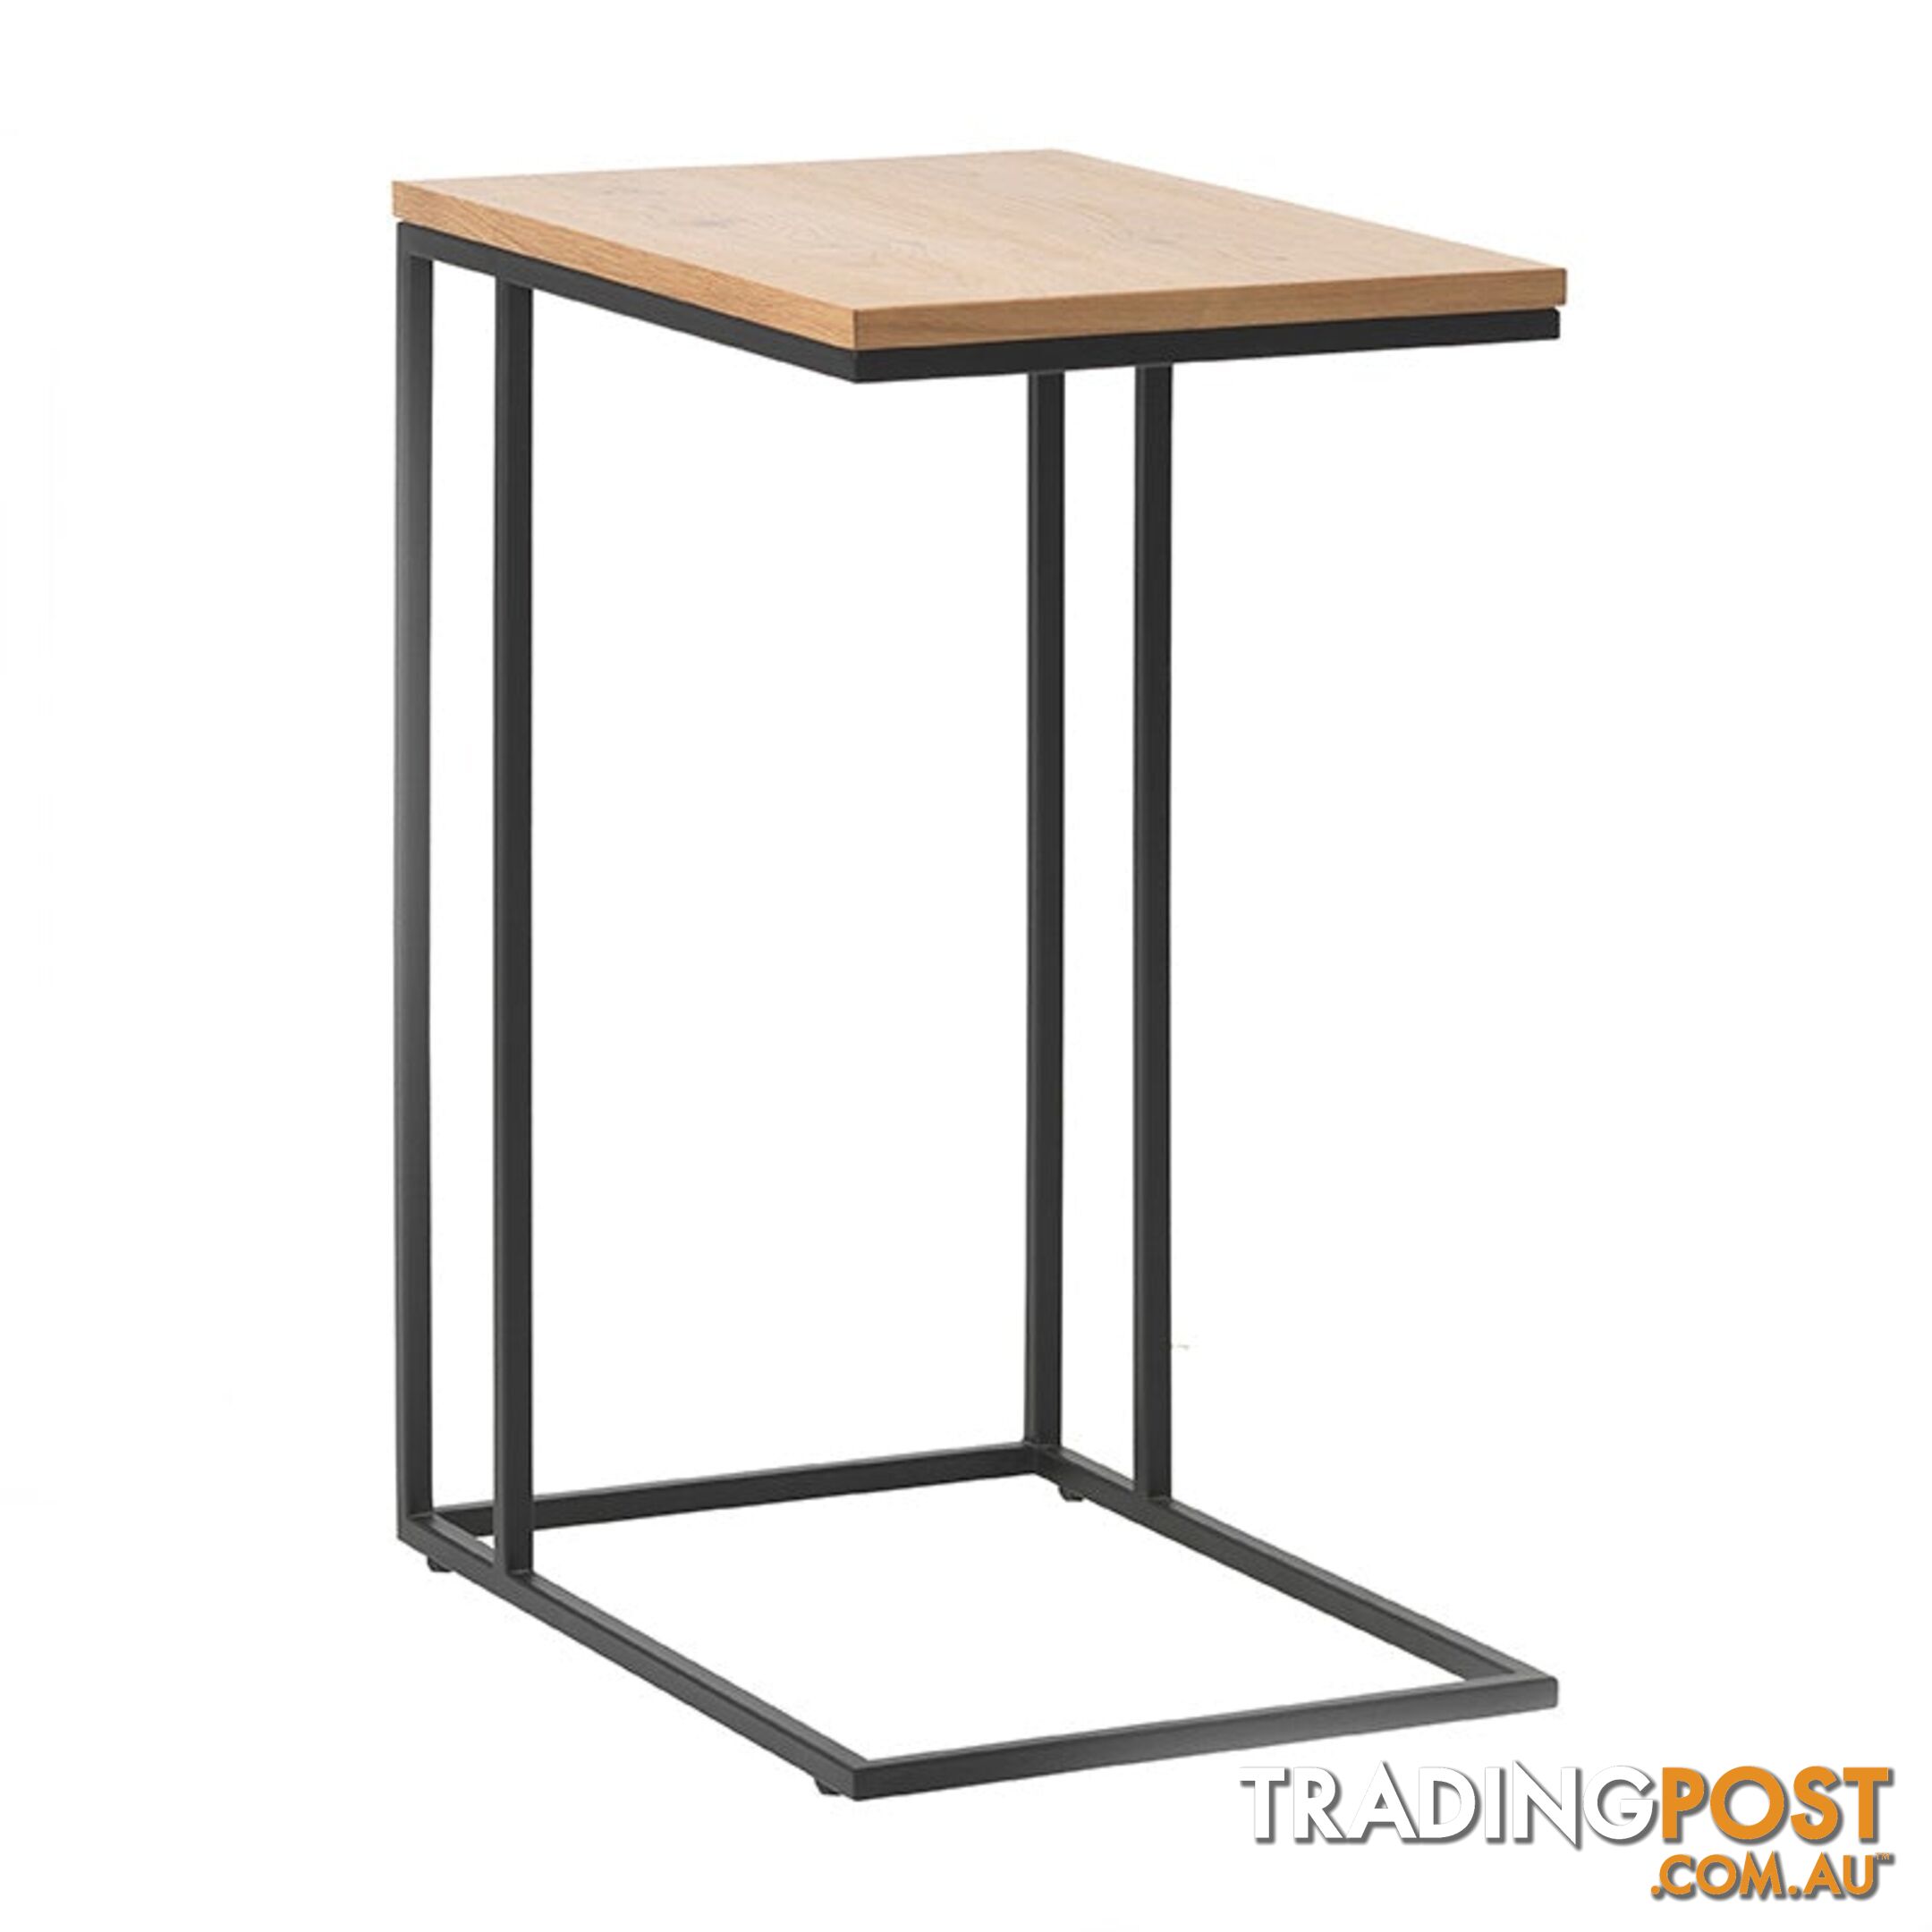 RIVOLI Laptop Table - Natural Oak / Black - 43391020 - 5704745097282